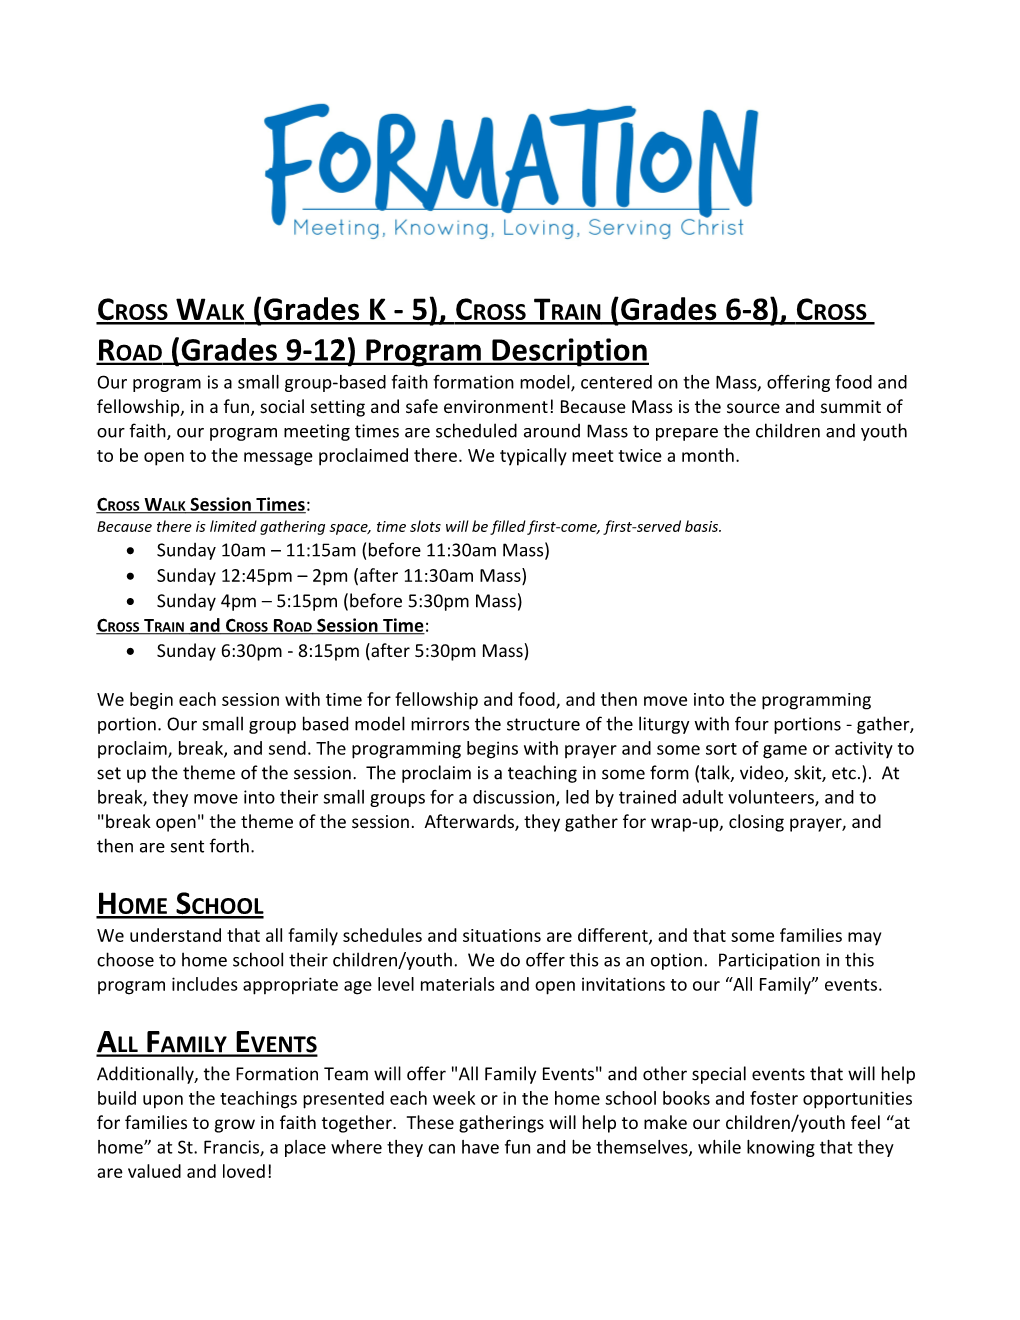 Cross Walk (Grades K - 5), Cross Train (Grades 6-8), Cross Road (Grades 9-12) Program